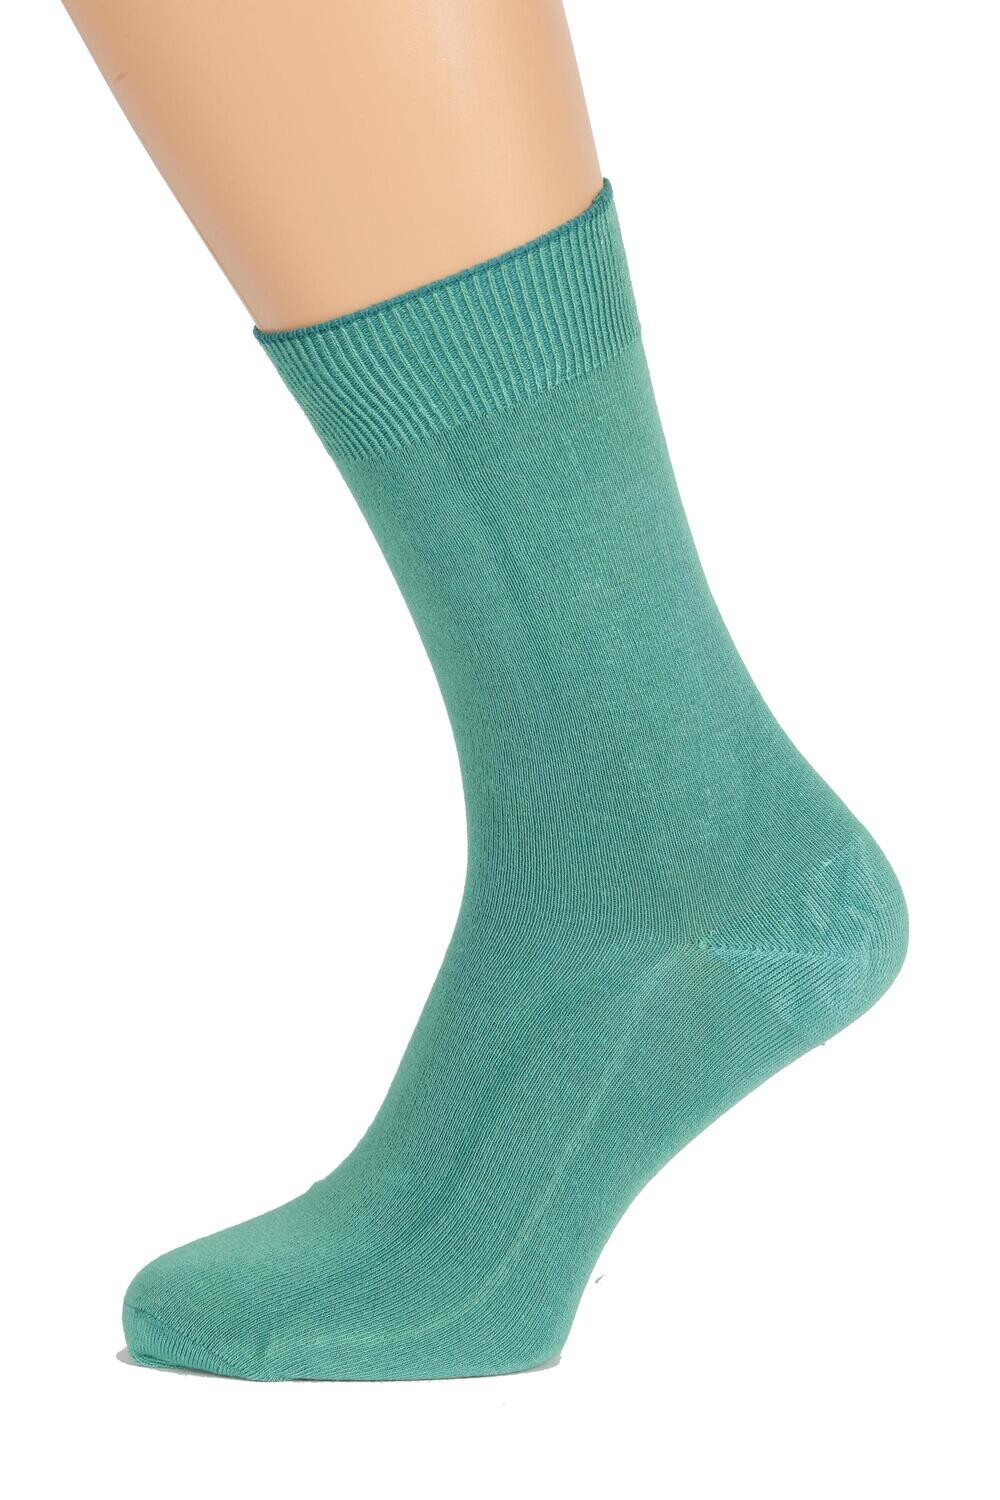 TAUNO men's green socks